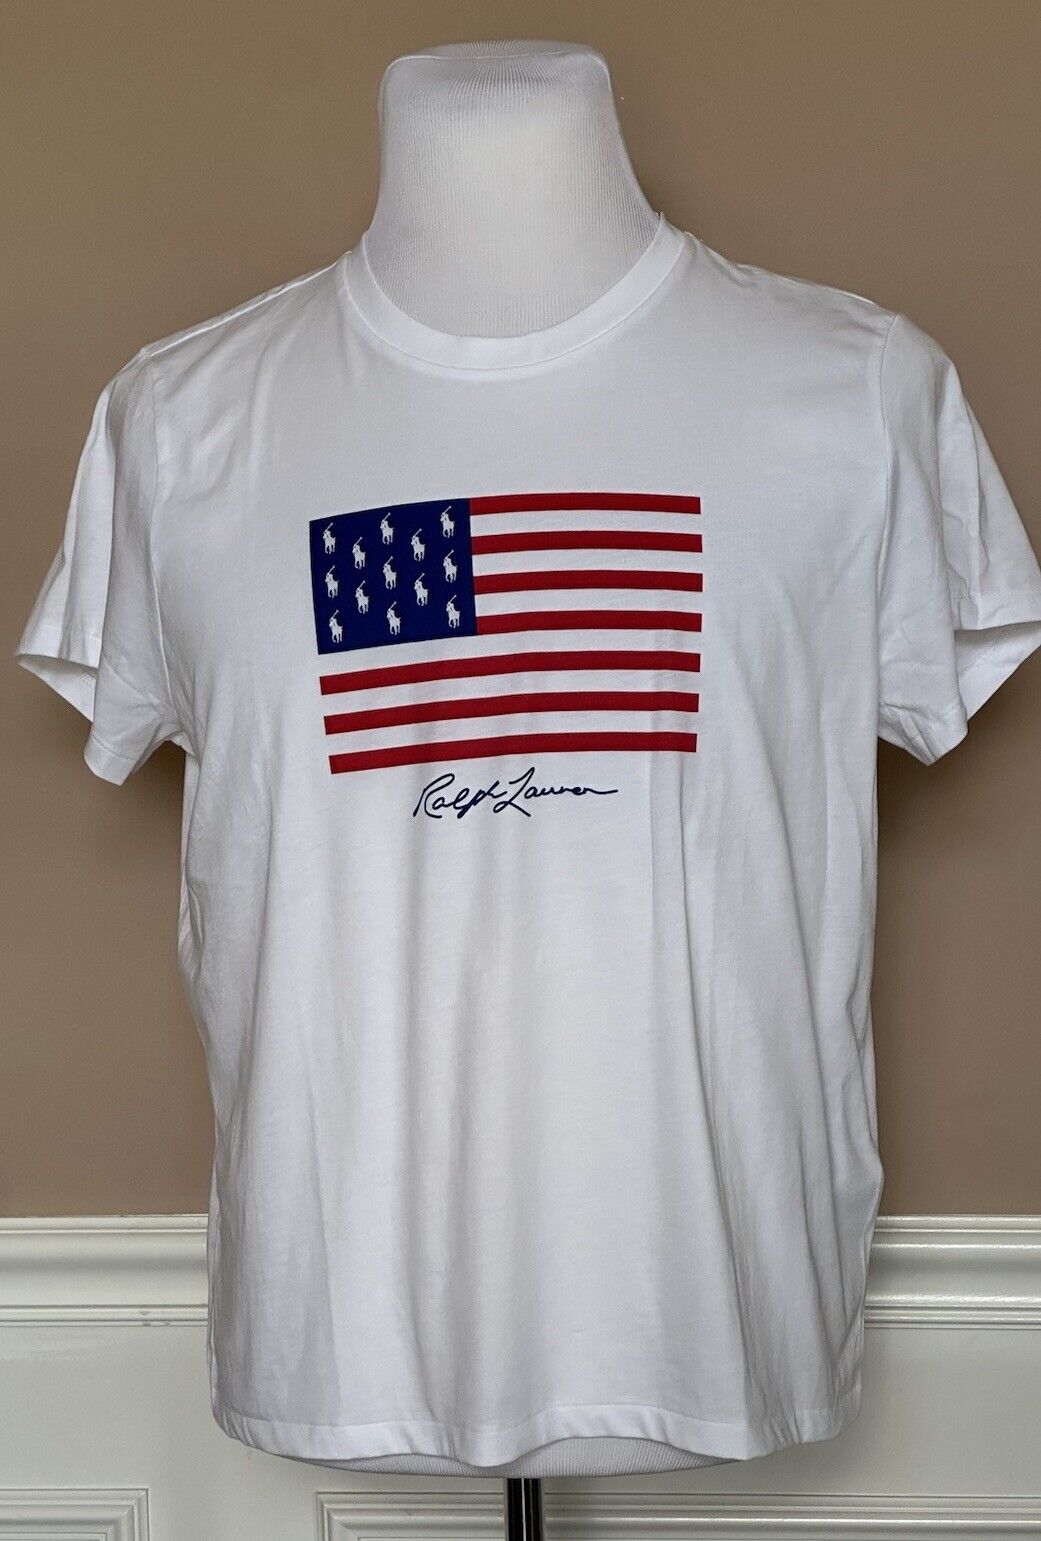 Neu mit Etikett: 78 $ Polo Ralph Lauren USA Flag Weißes Kurzarm-T-Shirt-Oberteil Small